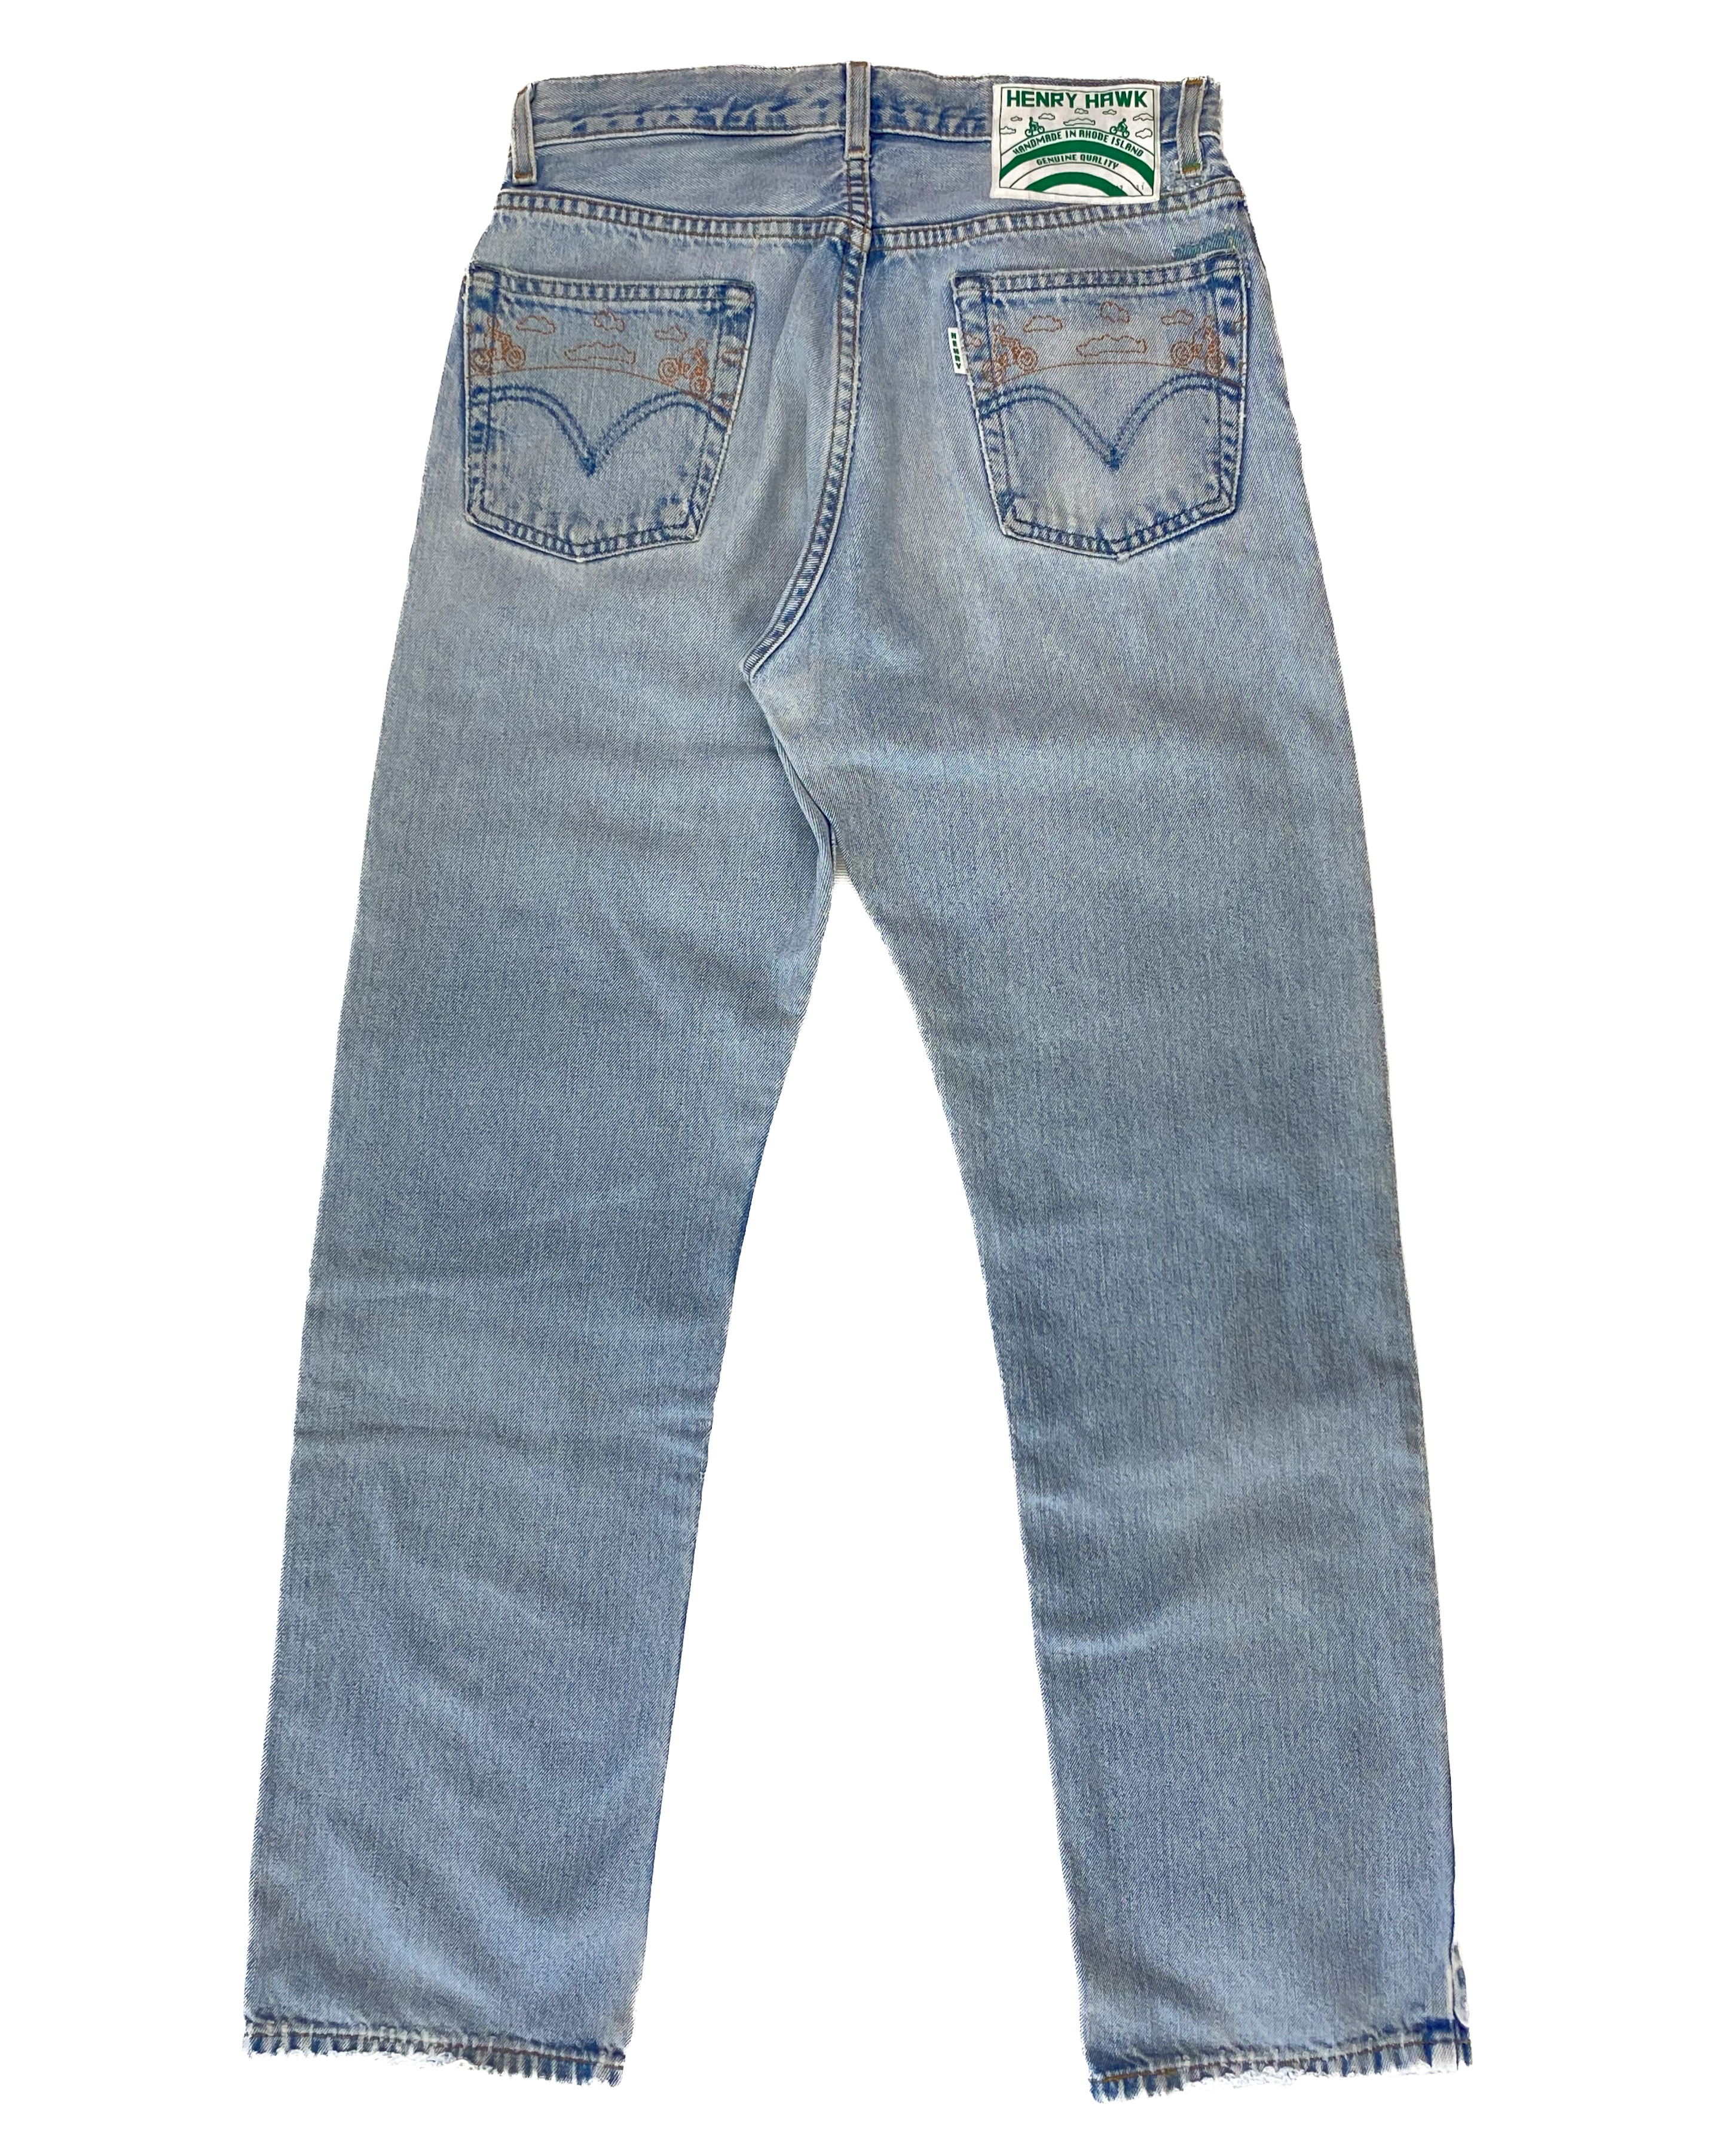 Refurbished jeans SHOP - Hawk Henry